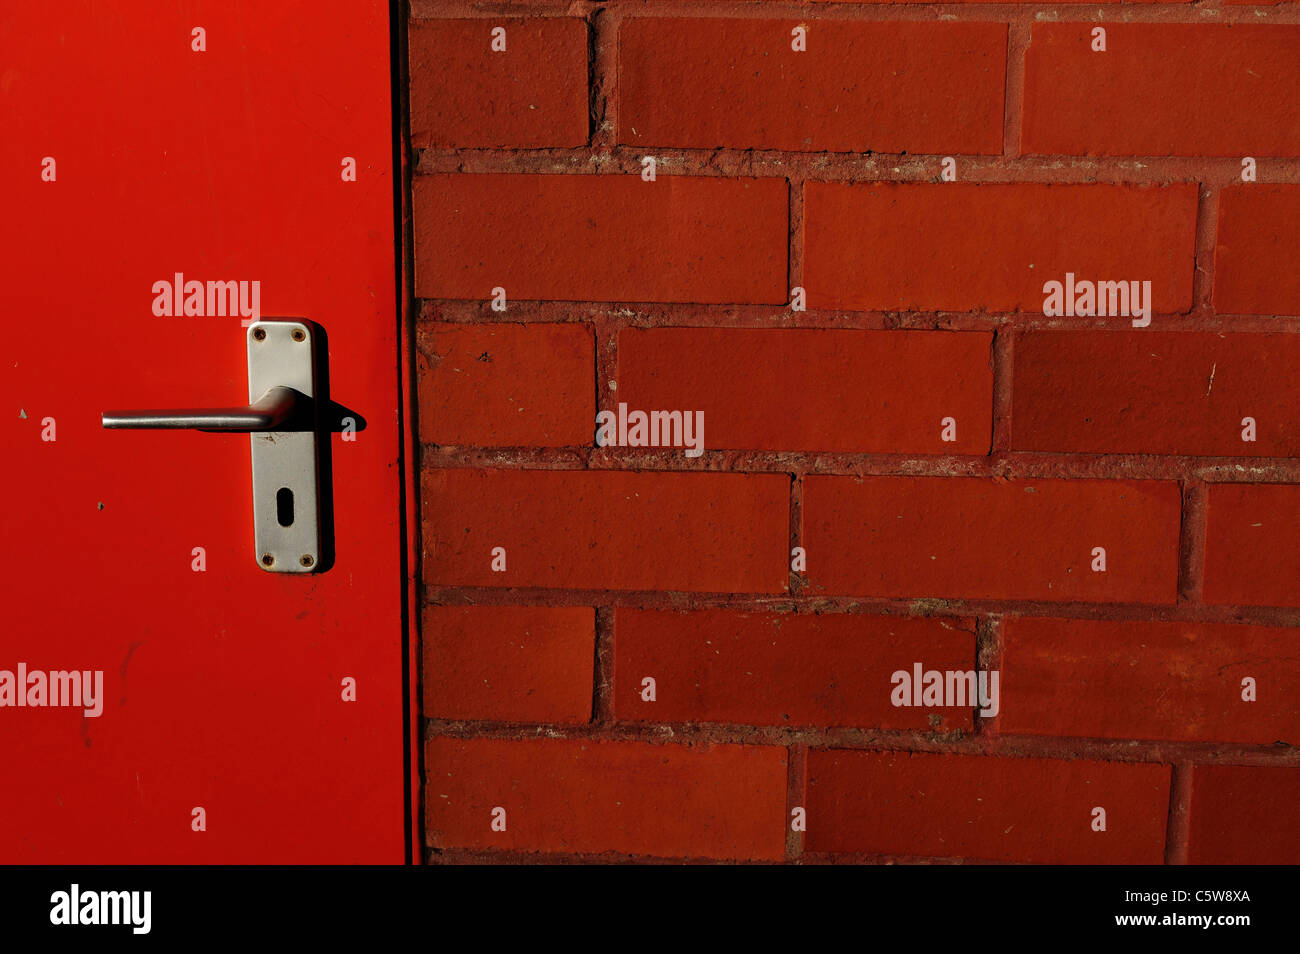 fire engine red door in redbrick wall aluminium door handle Stock Photo